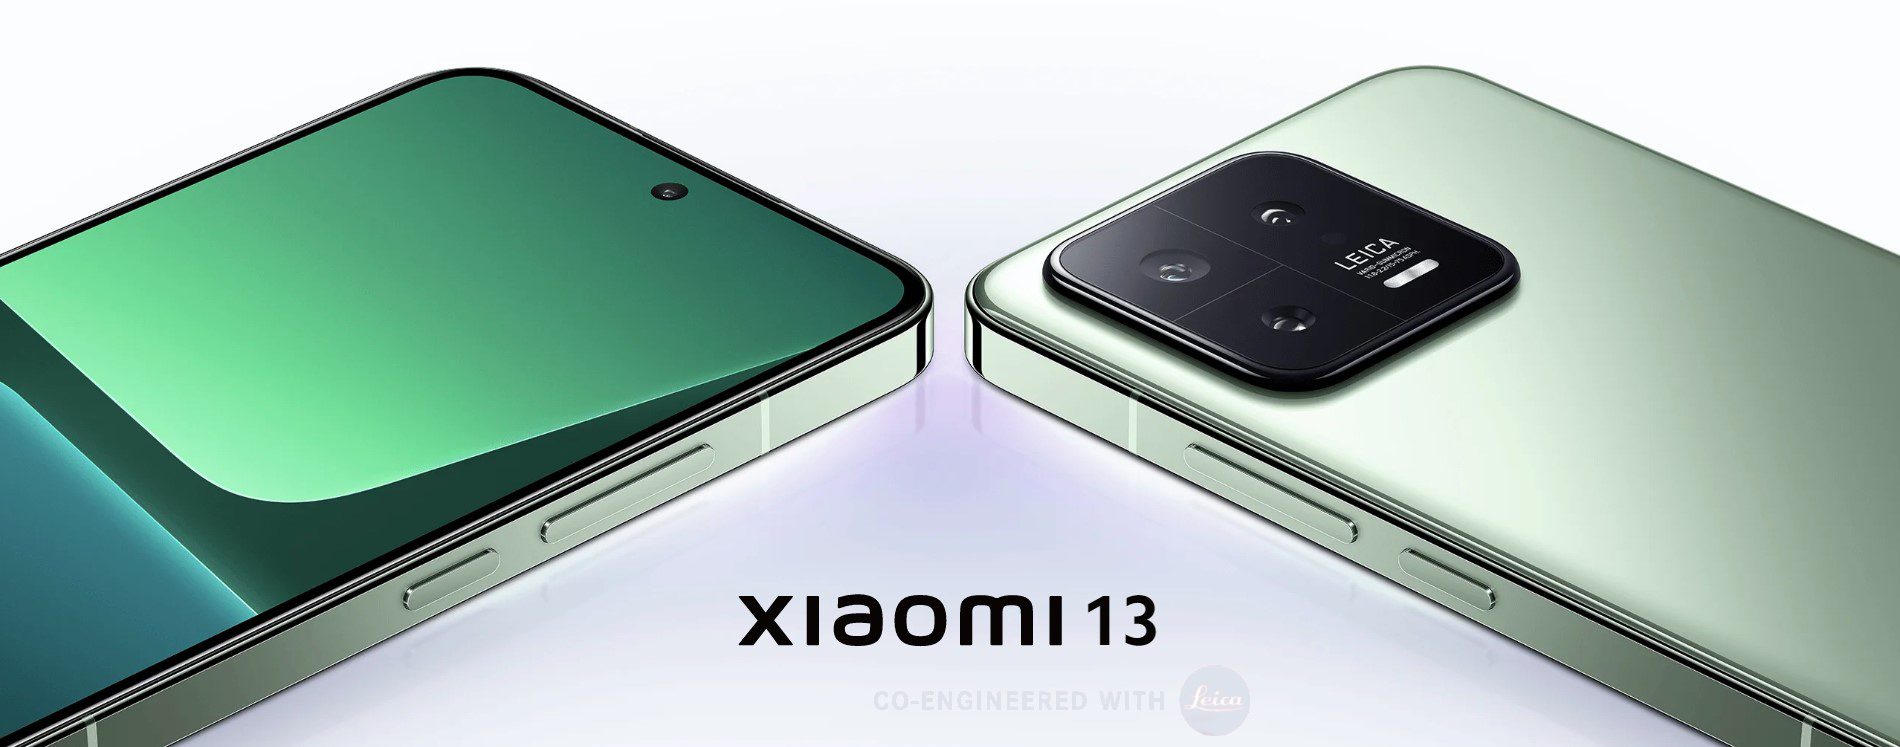 Совершенное трио: обзор новейших Xiaomi 13